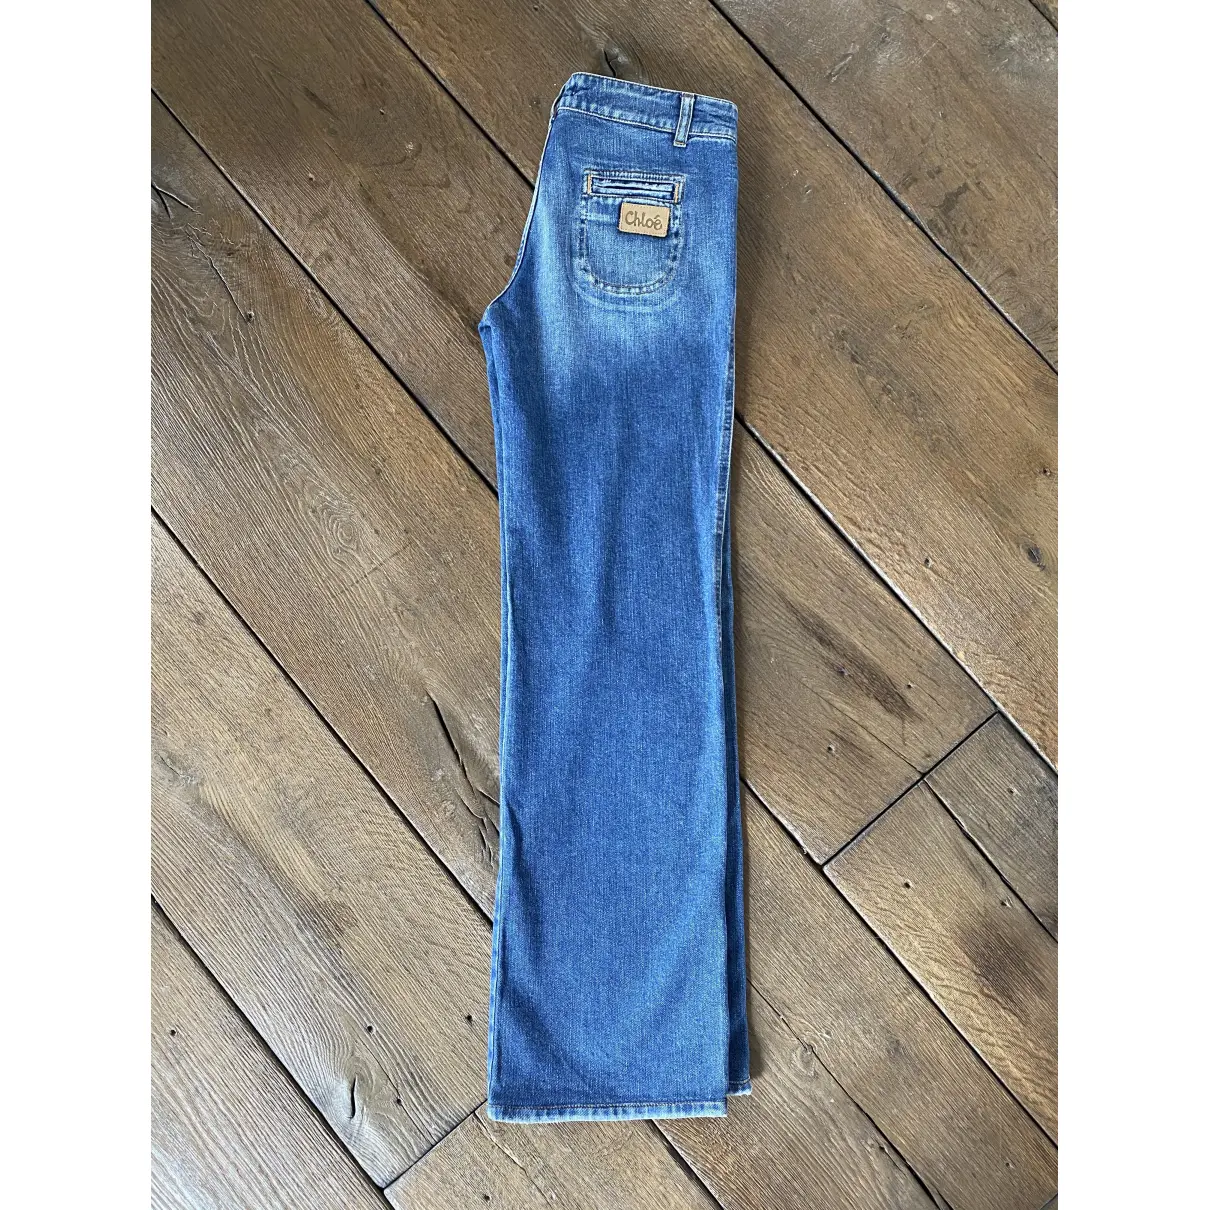 Blue Denim - Jeans Jeans Chloé - Vintage